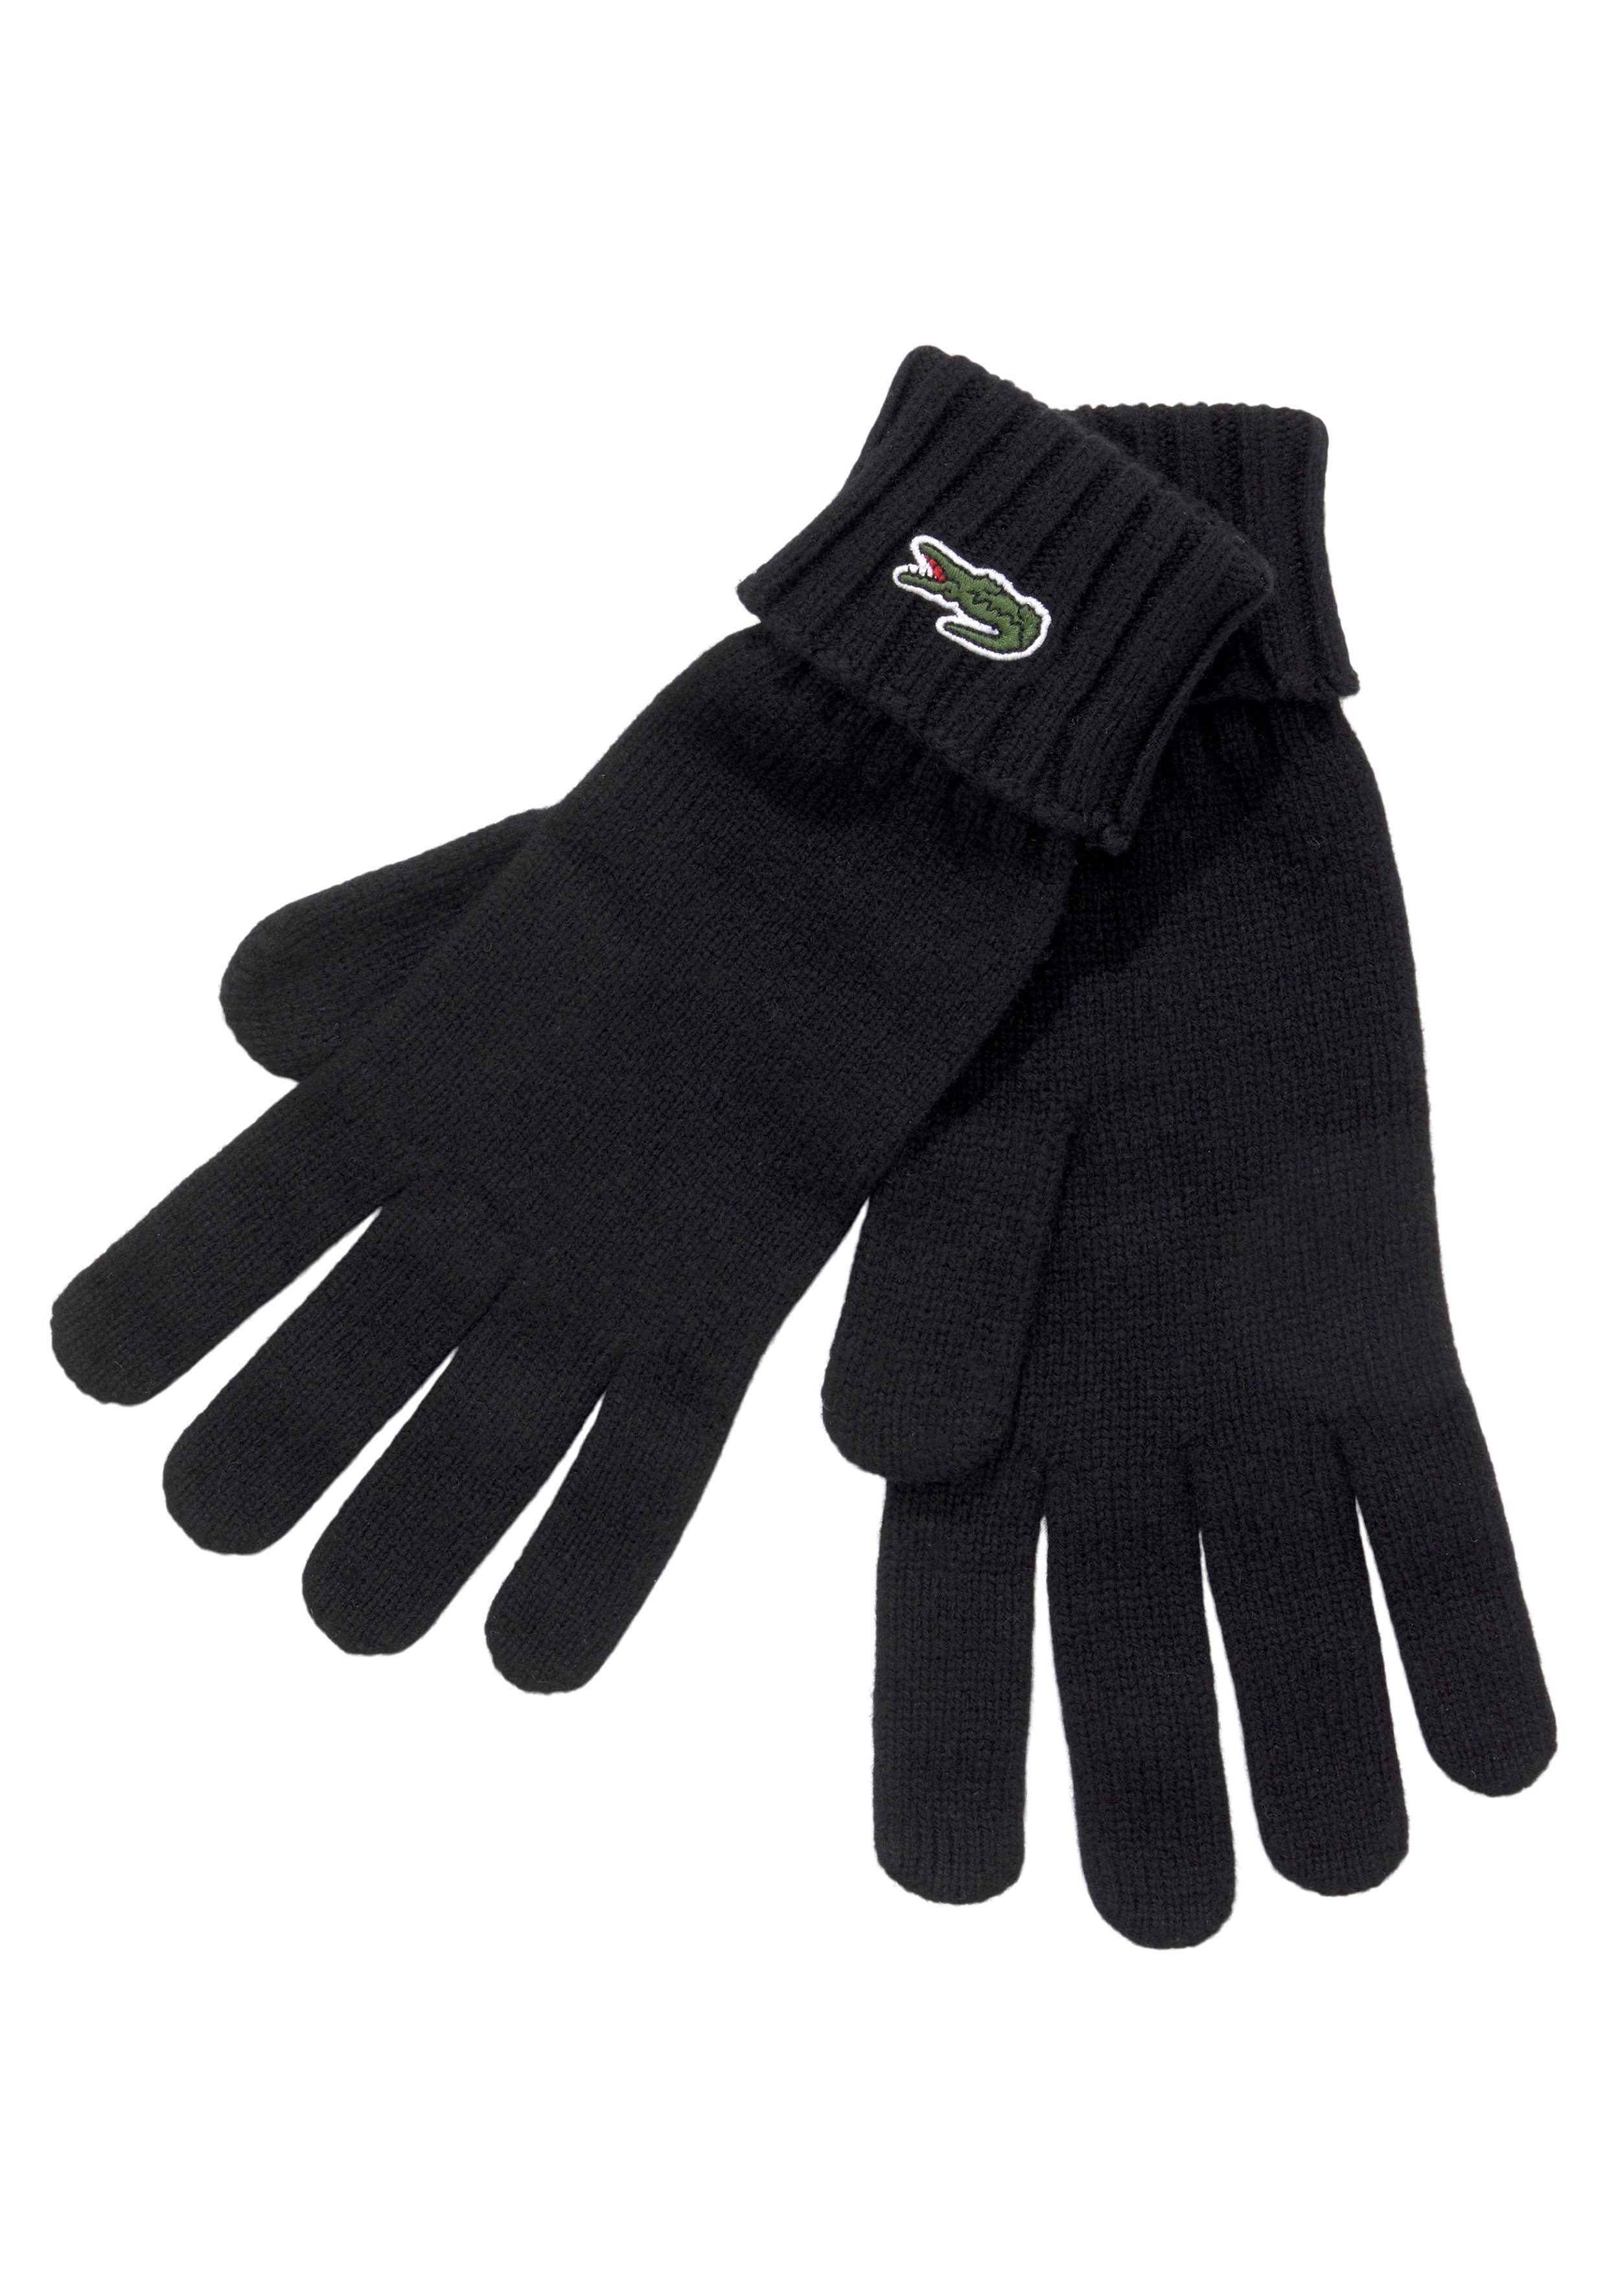 Lacoste Strickhandschuhe Unisex Gloves Strickhandschuhe mit Logo, Geschenk,  Gift Premium, Warm, Umschlag am Bündchen